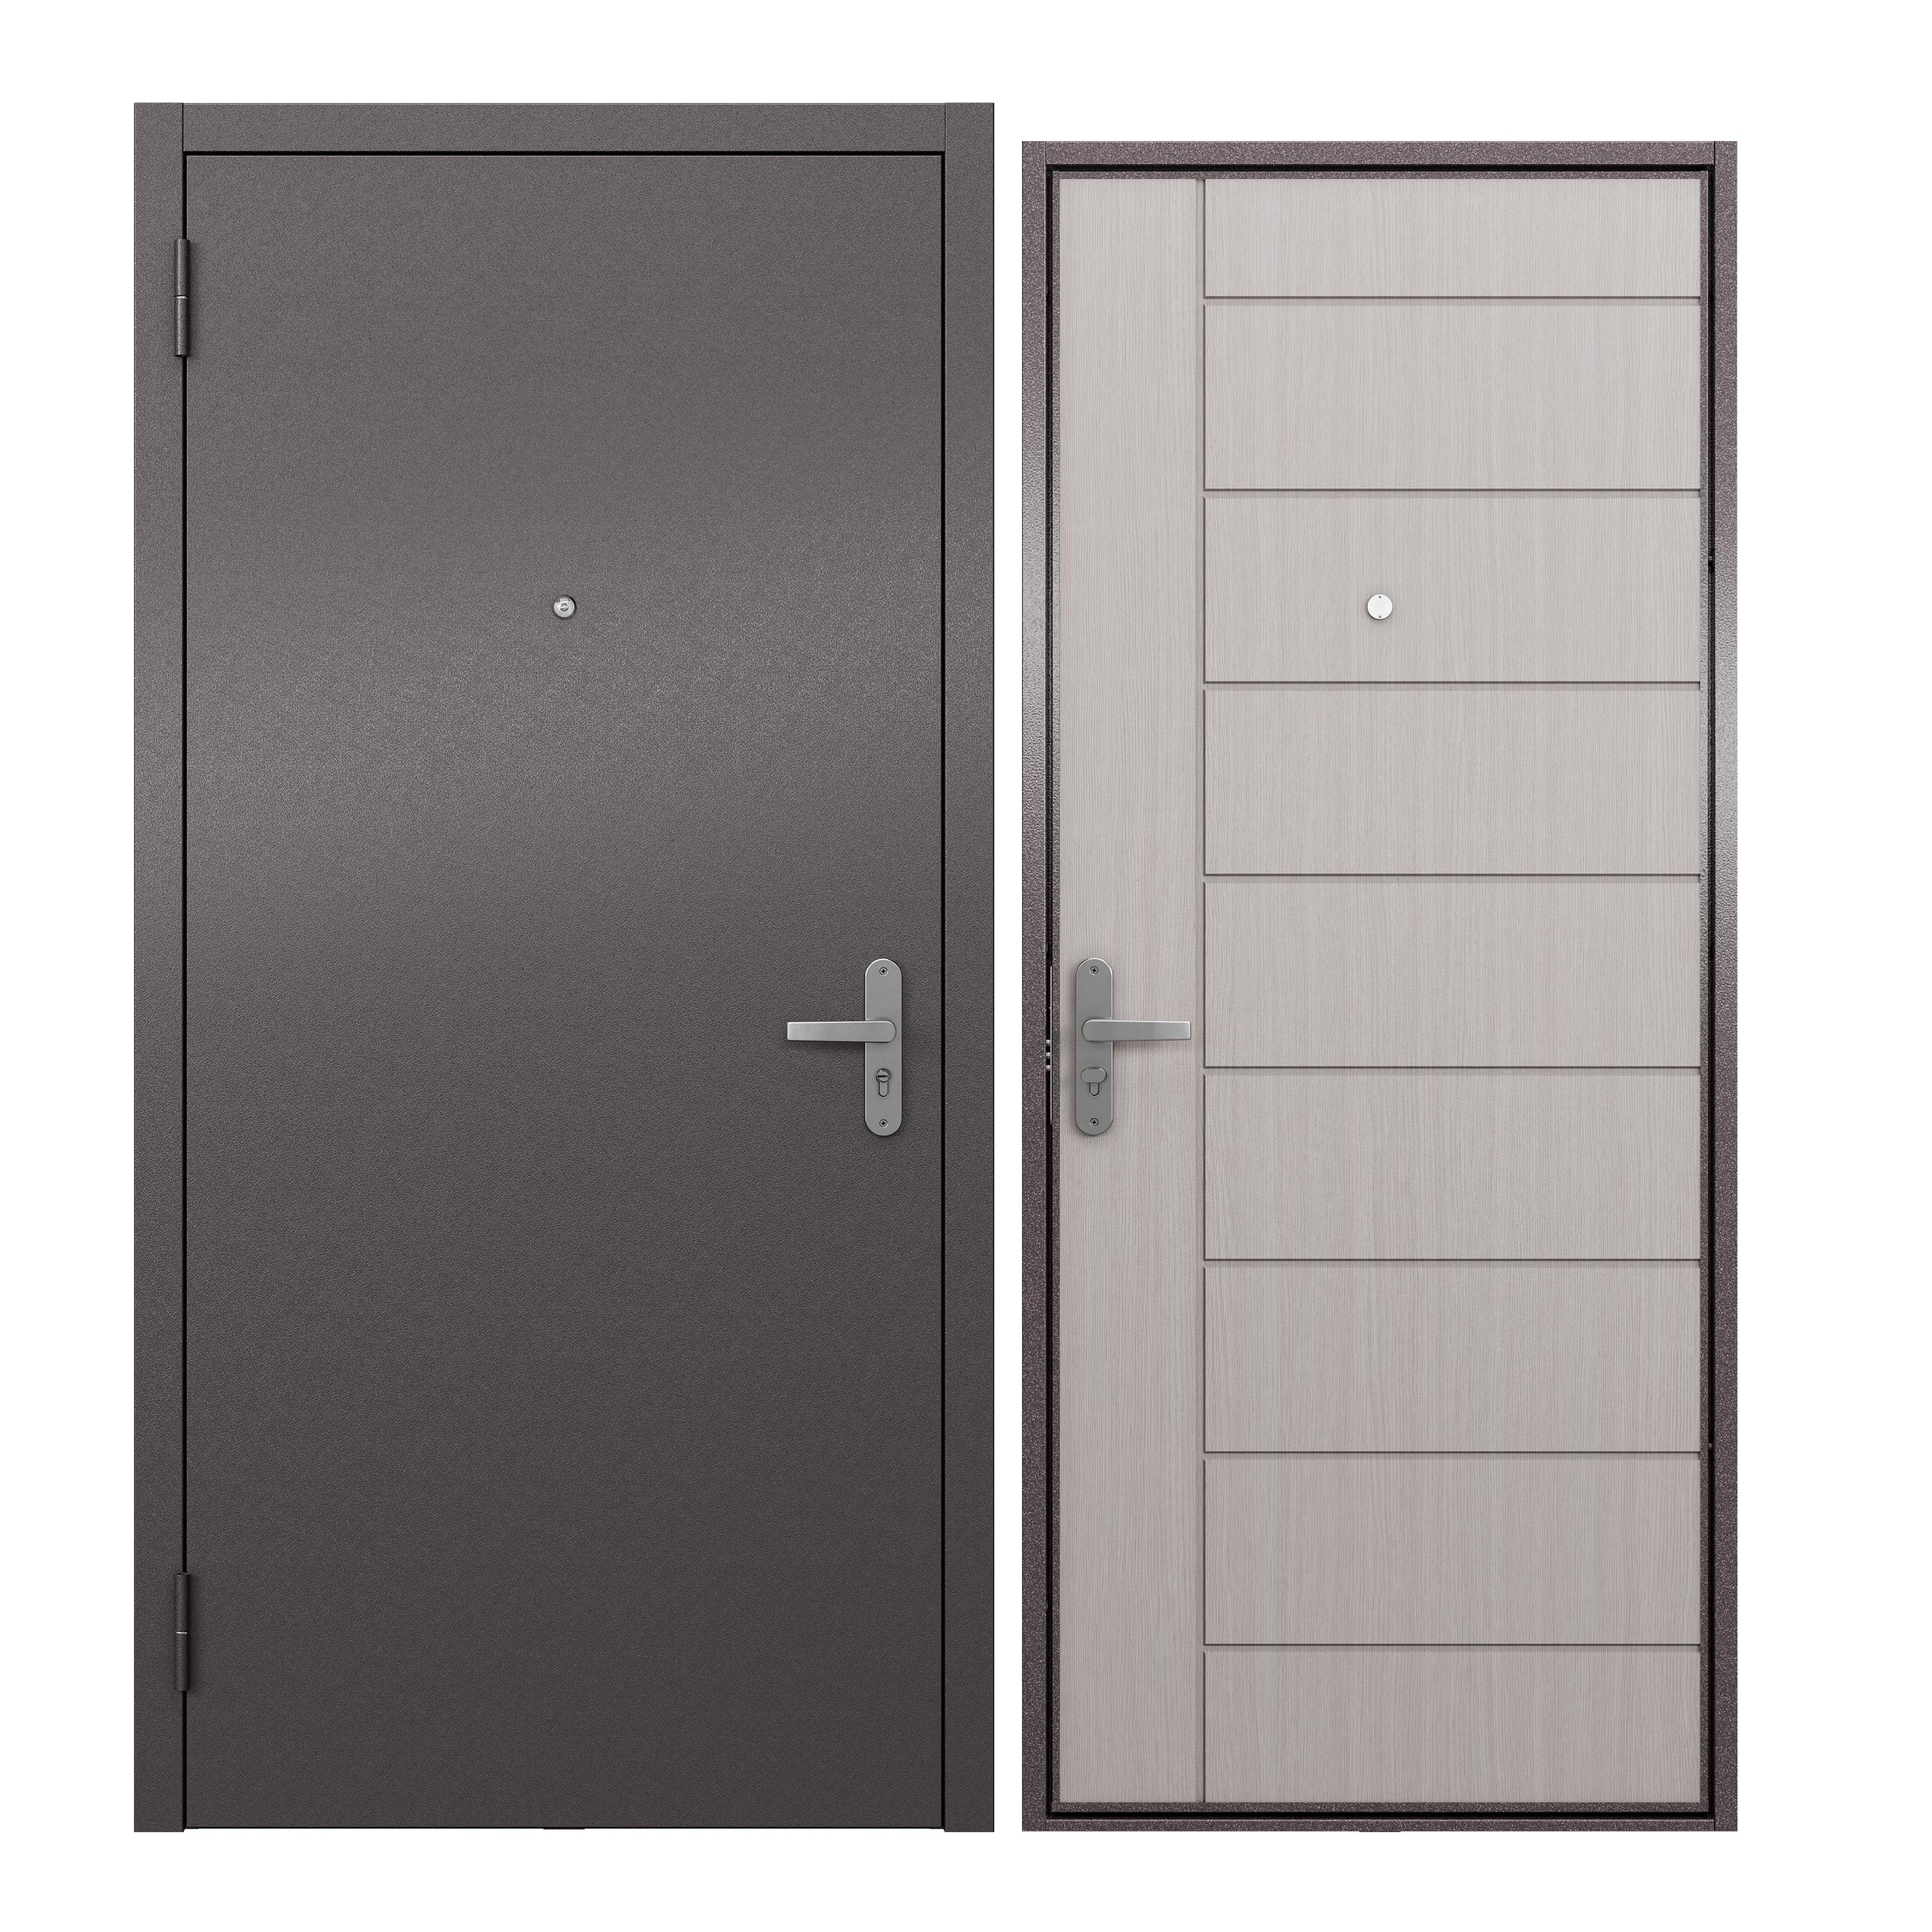 Дверь входная для квартиры ProLine металлическая Terminal A 860х2050, левая, белый дверь входная buldoors марко левая букле шоколад дуб шале натуральный со стеклом 860х2050 мм